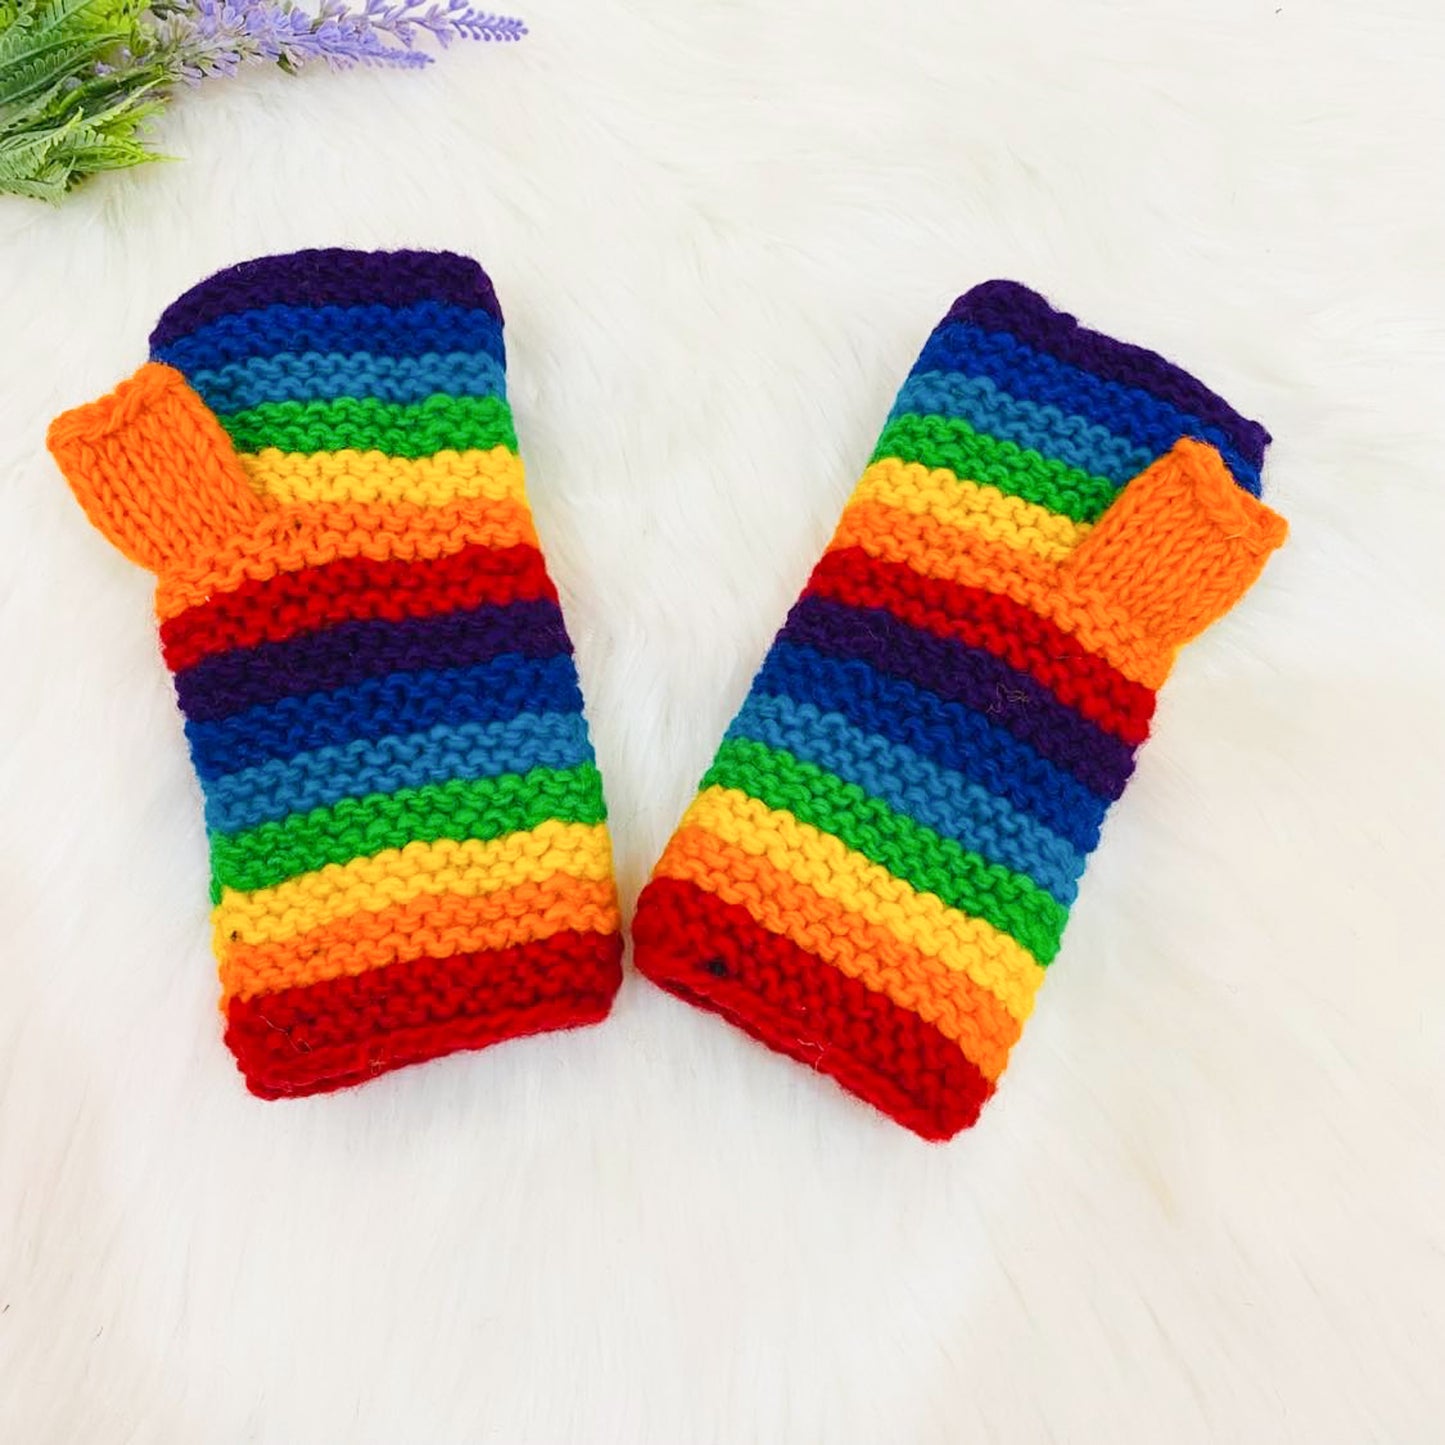 Hand Knitted Rainbow Fingerless Gloves